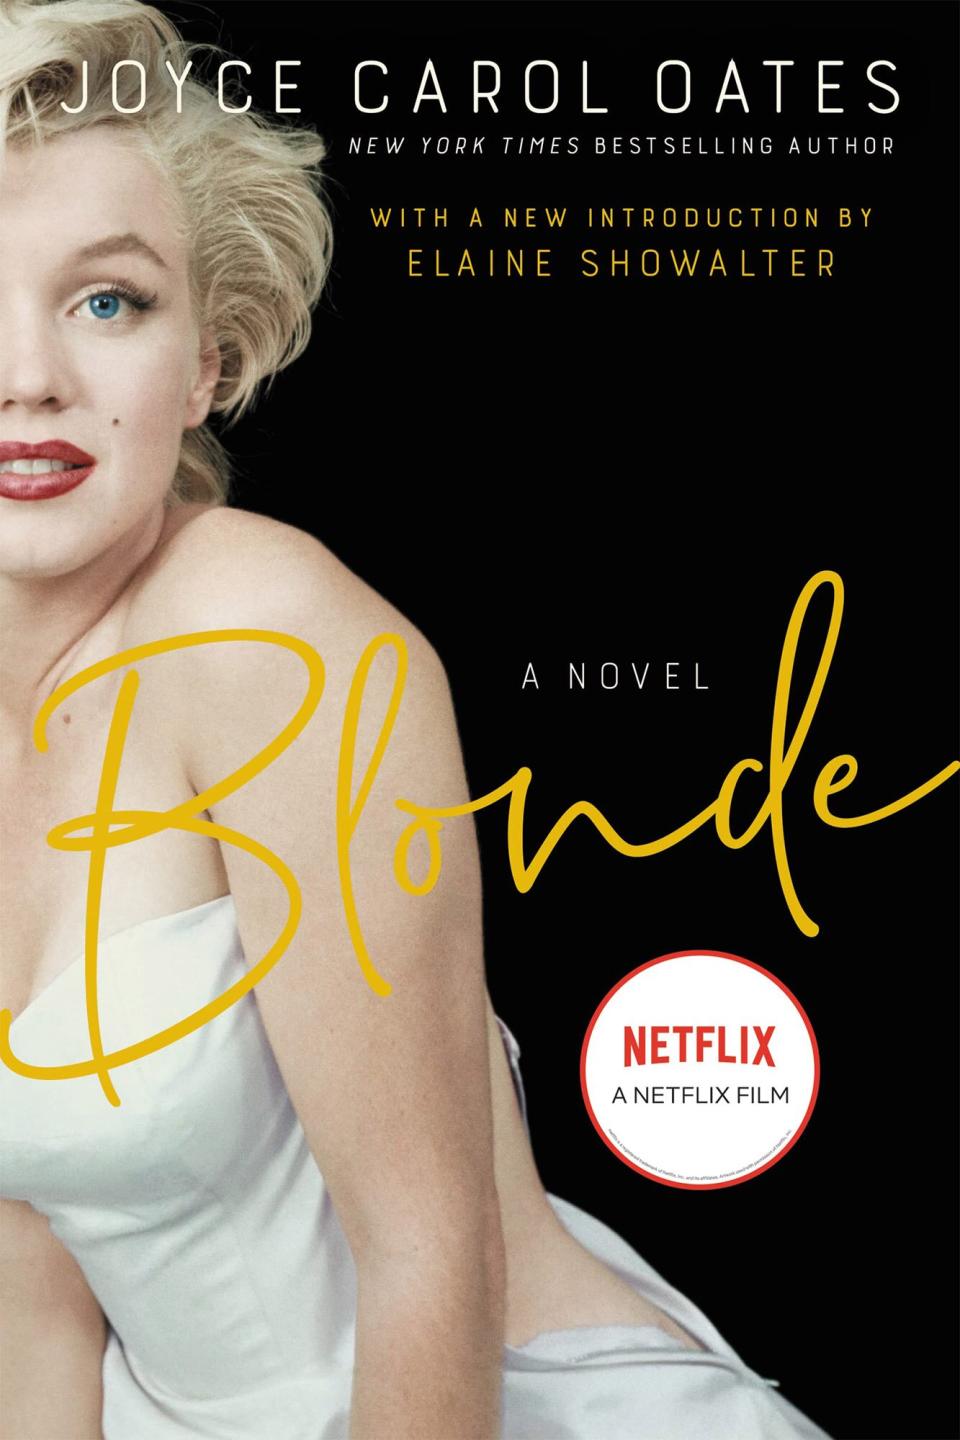 Blonde: A Novel Paperback – April 14, 2020 by Joyce Carol Oates